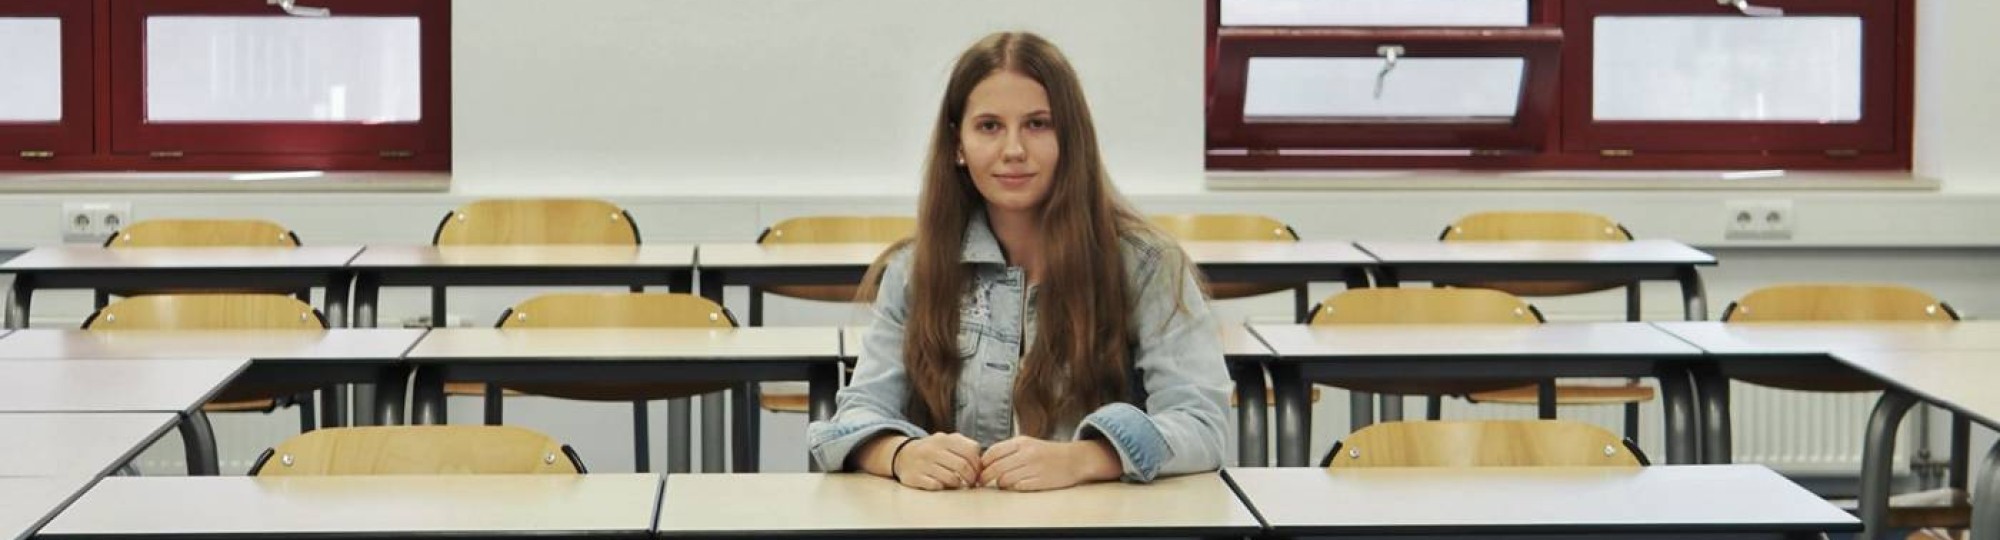 Portretfoto van Annemae de Vries, ze zit in een klaslokaal aan een tafel op een stoel. Haar lange donkerblonde haar zit los, ze draagt een lichtblauw spijkerjasje, witte jeans en witte sneakers